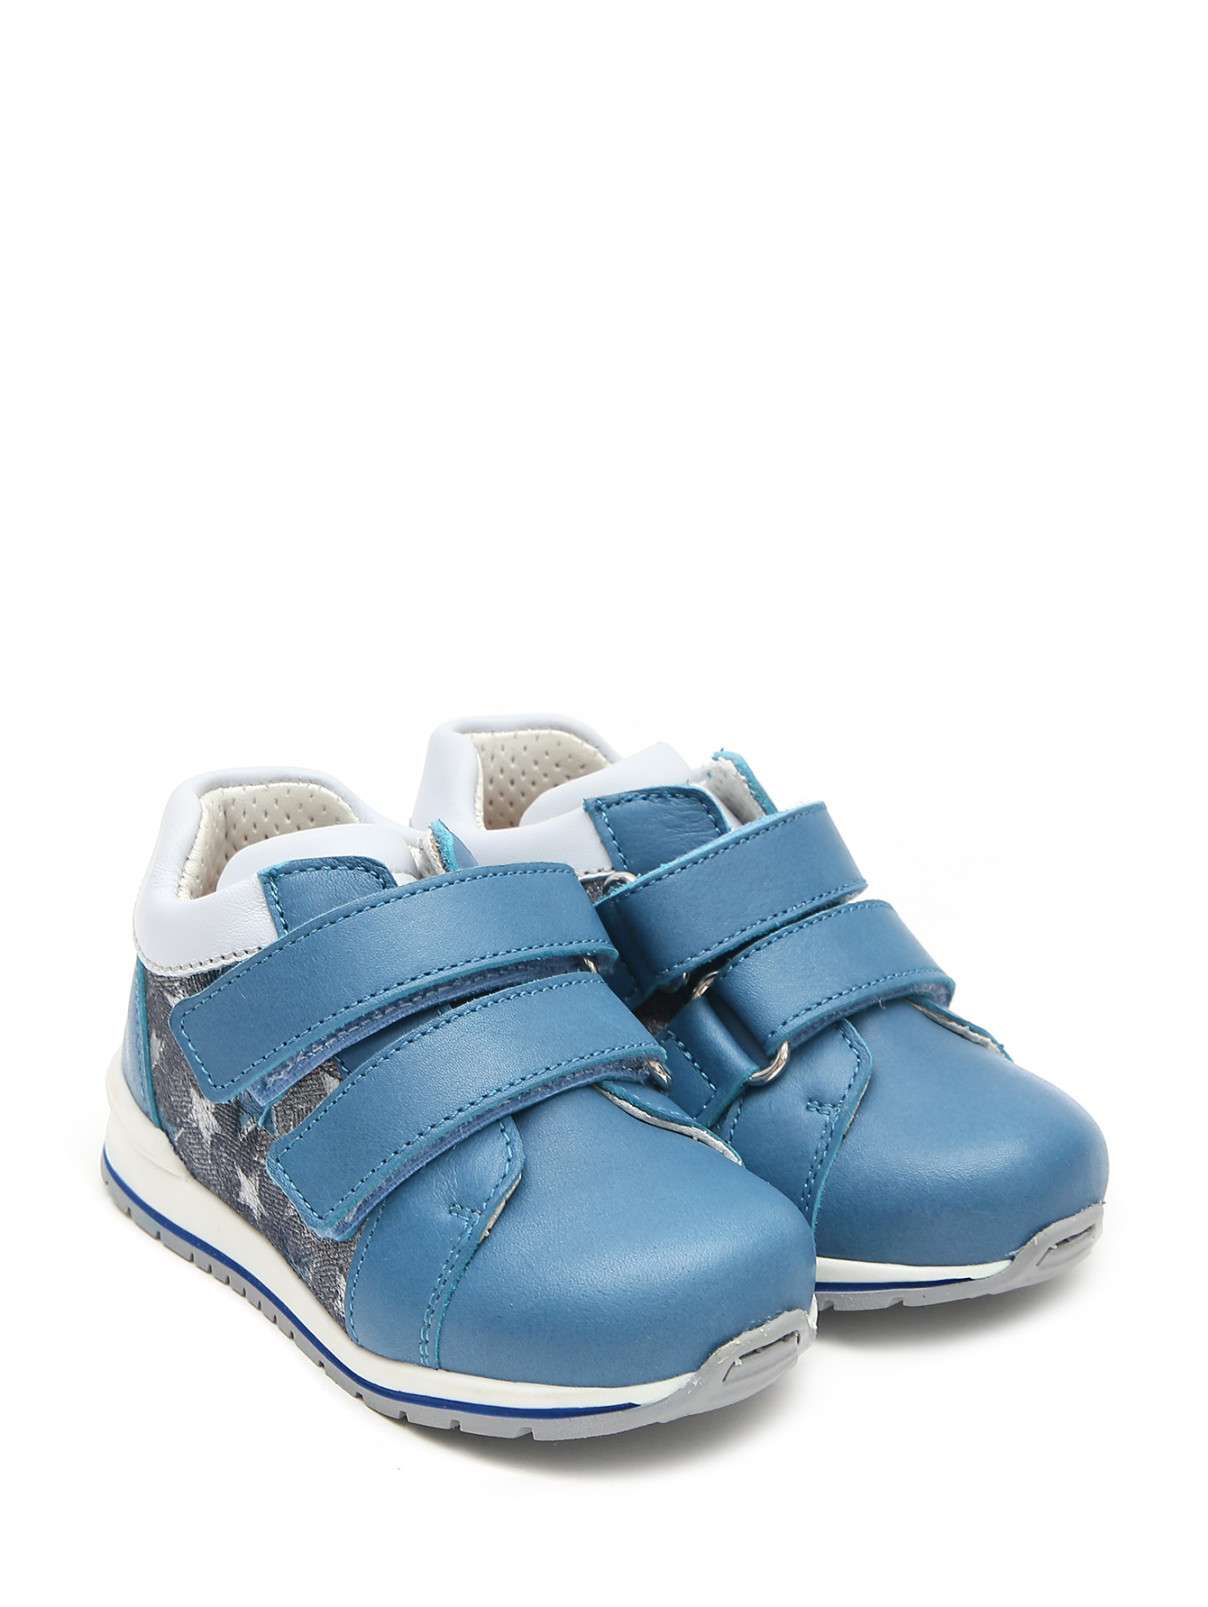 Ботинки кожаные на липкой застежке Zecchino d`Oro  –  Общий вид  – Цвет:  Синий